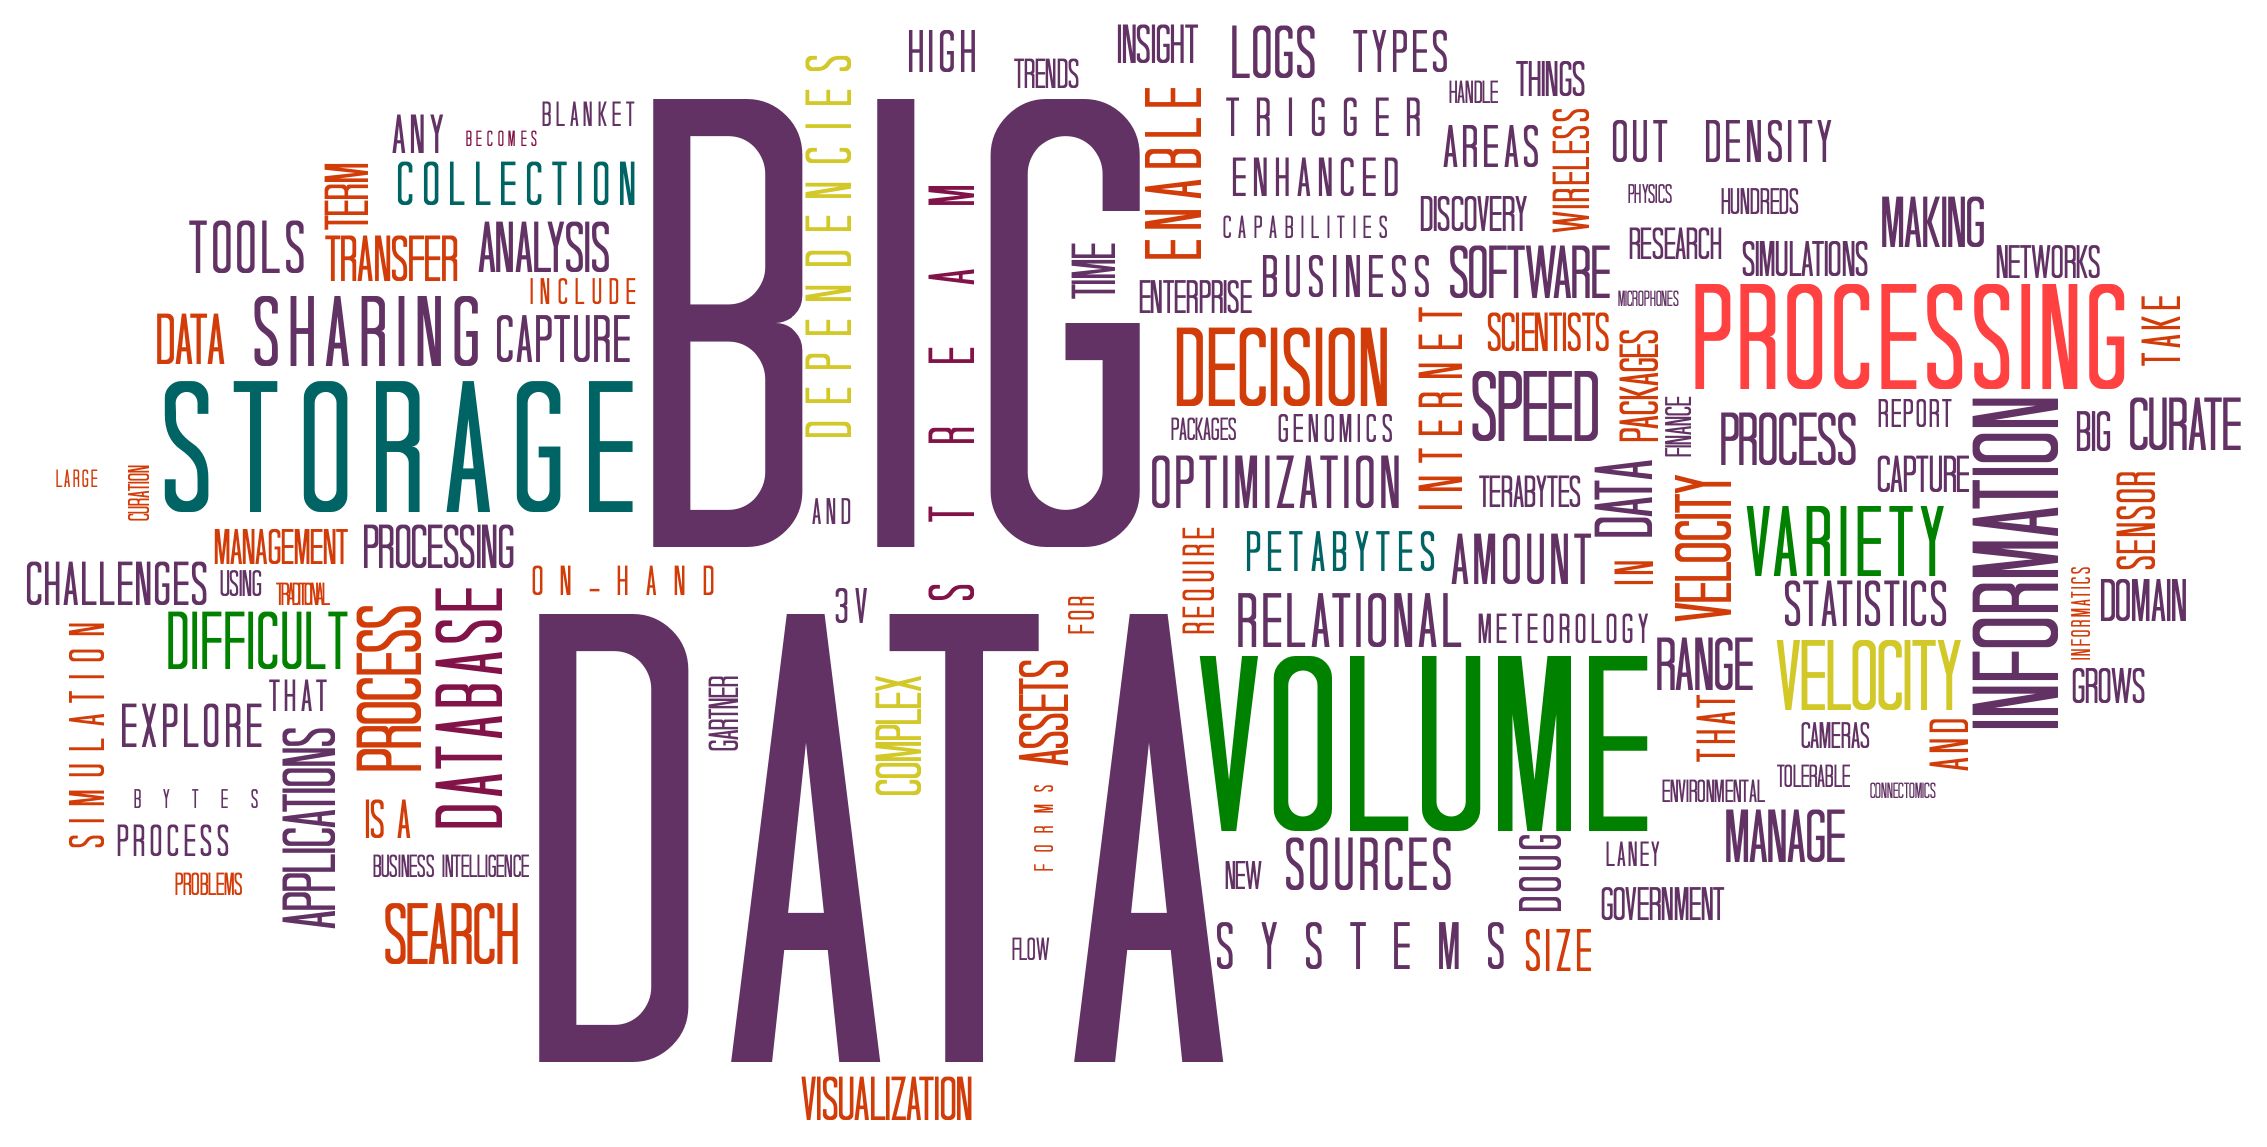 Uma entrevista didática sobre Big Data